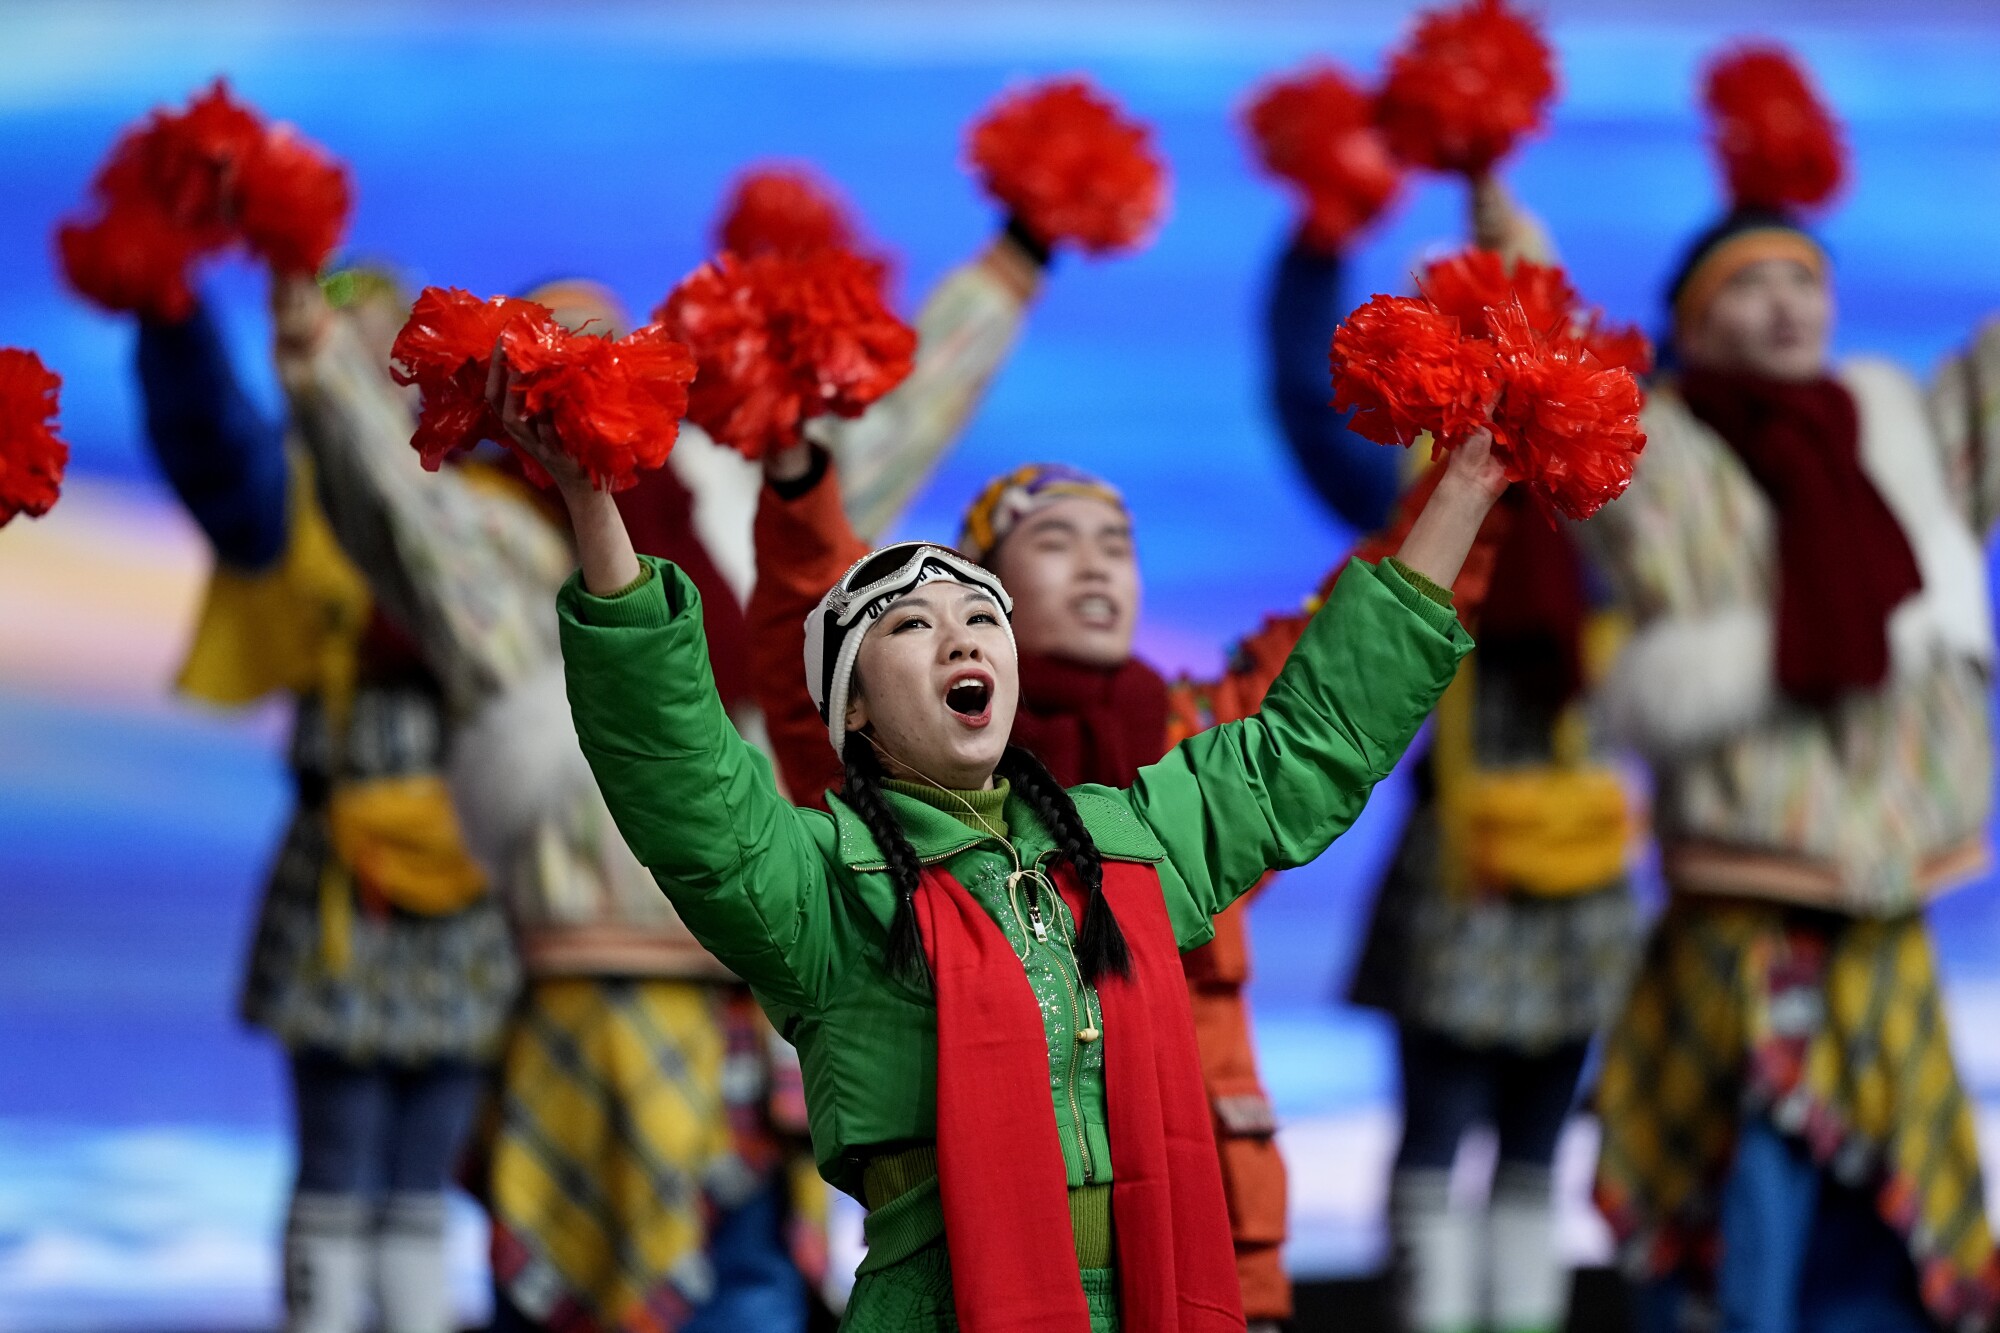 Schauspieler jubeln, als Chinas Präsident Xi Jinping zur Eröffnungszeremonie der Olympischen Winterspiele 2022 in Peking eintrifft.